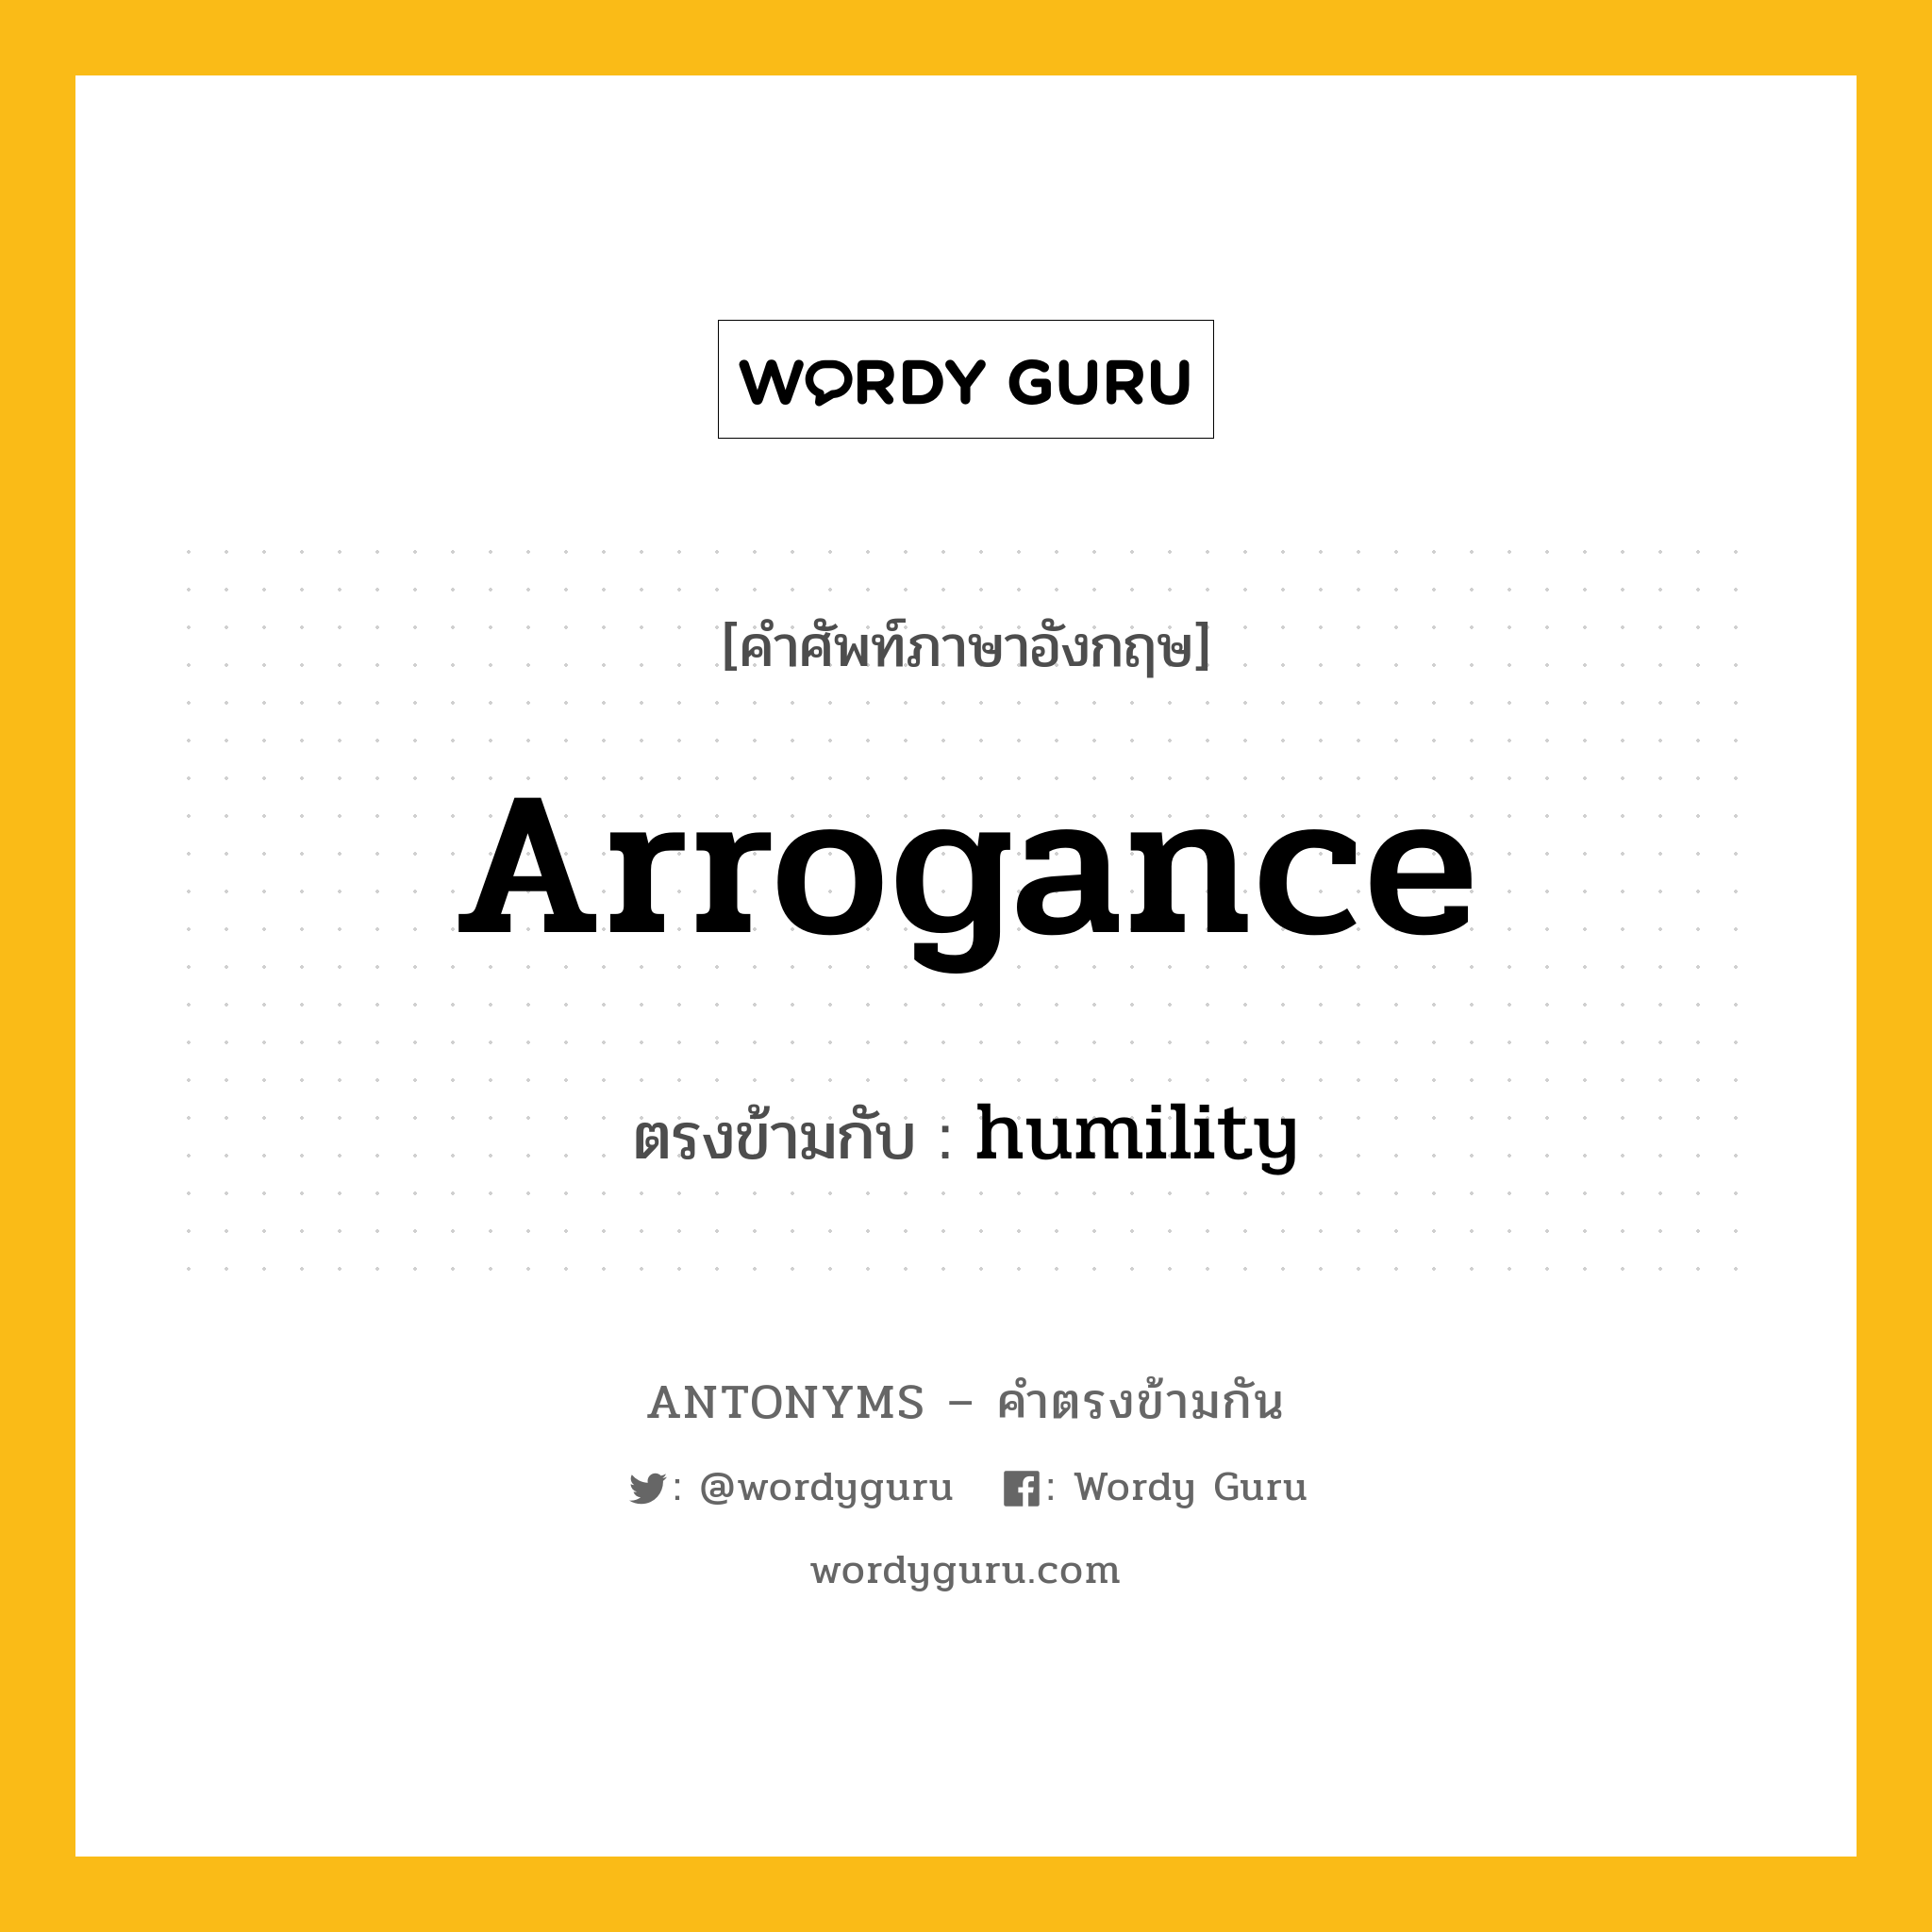 arrogance เป็นคำตรงข้ามกับคำไหนบ้าง?, คำศัพท์ภาษาอังกฤษ arrogance ตรงข้ามกับ humility หมวด humility